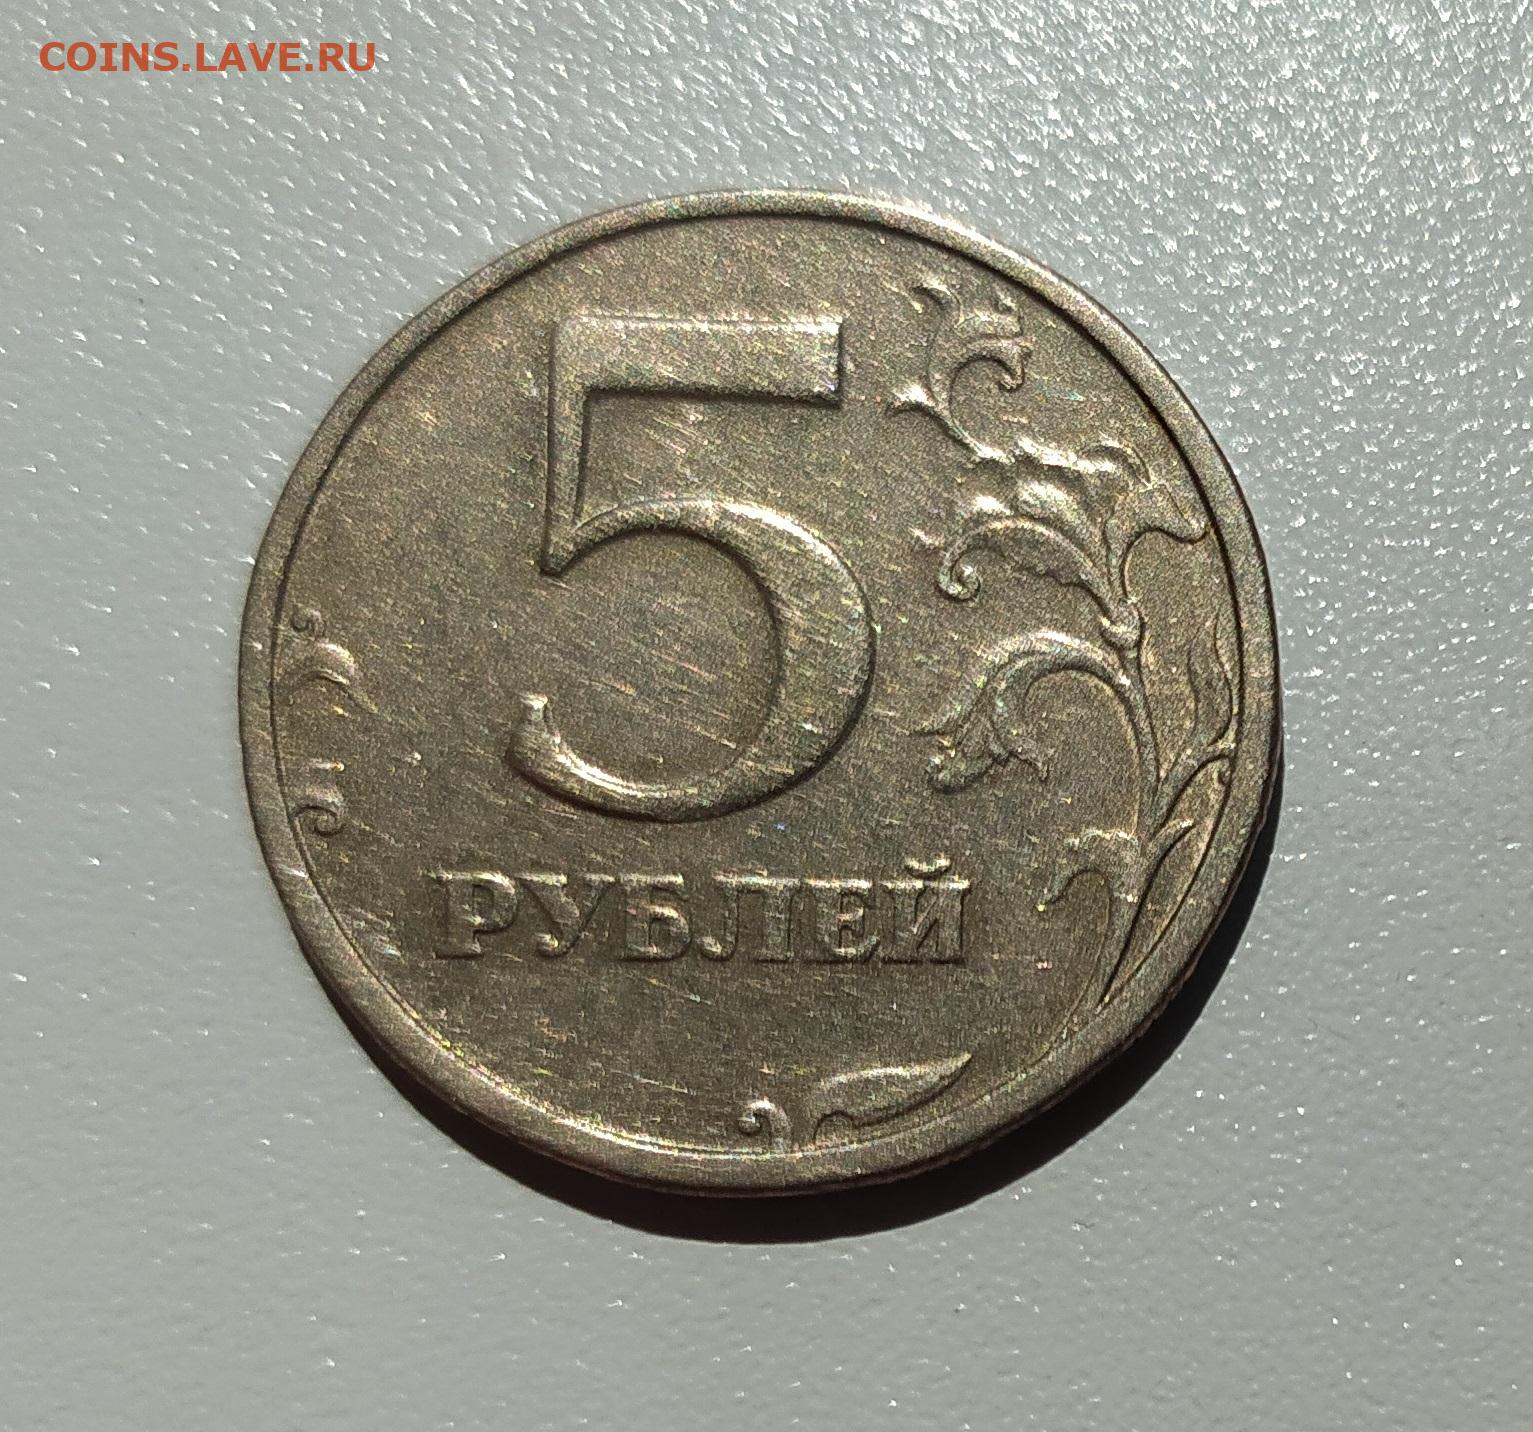 5 рублей 2024 года. Двадцать пять рублей. Двадцать пять рублей латунь 2014. Купить рубль на аукционе 2003 года.